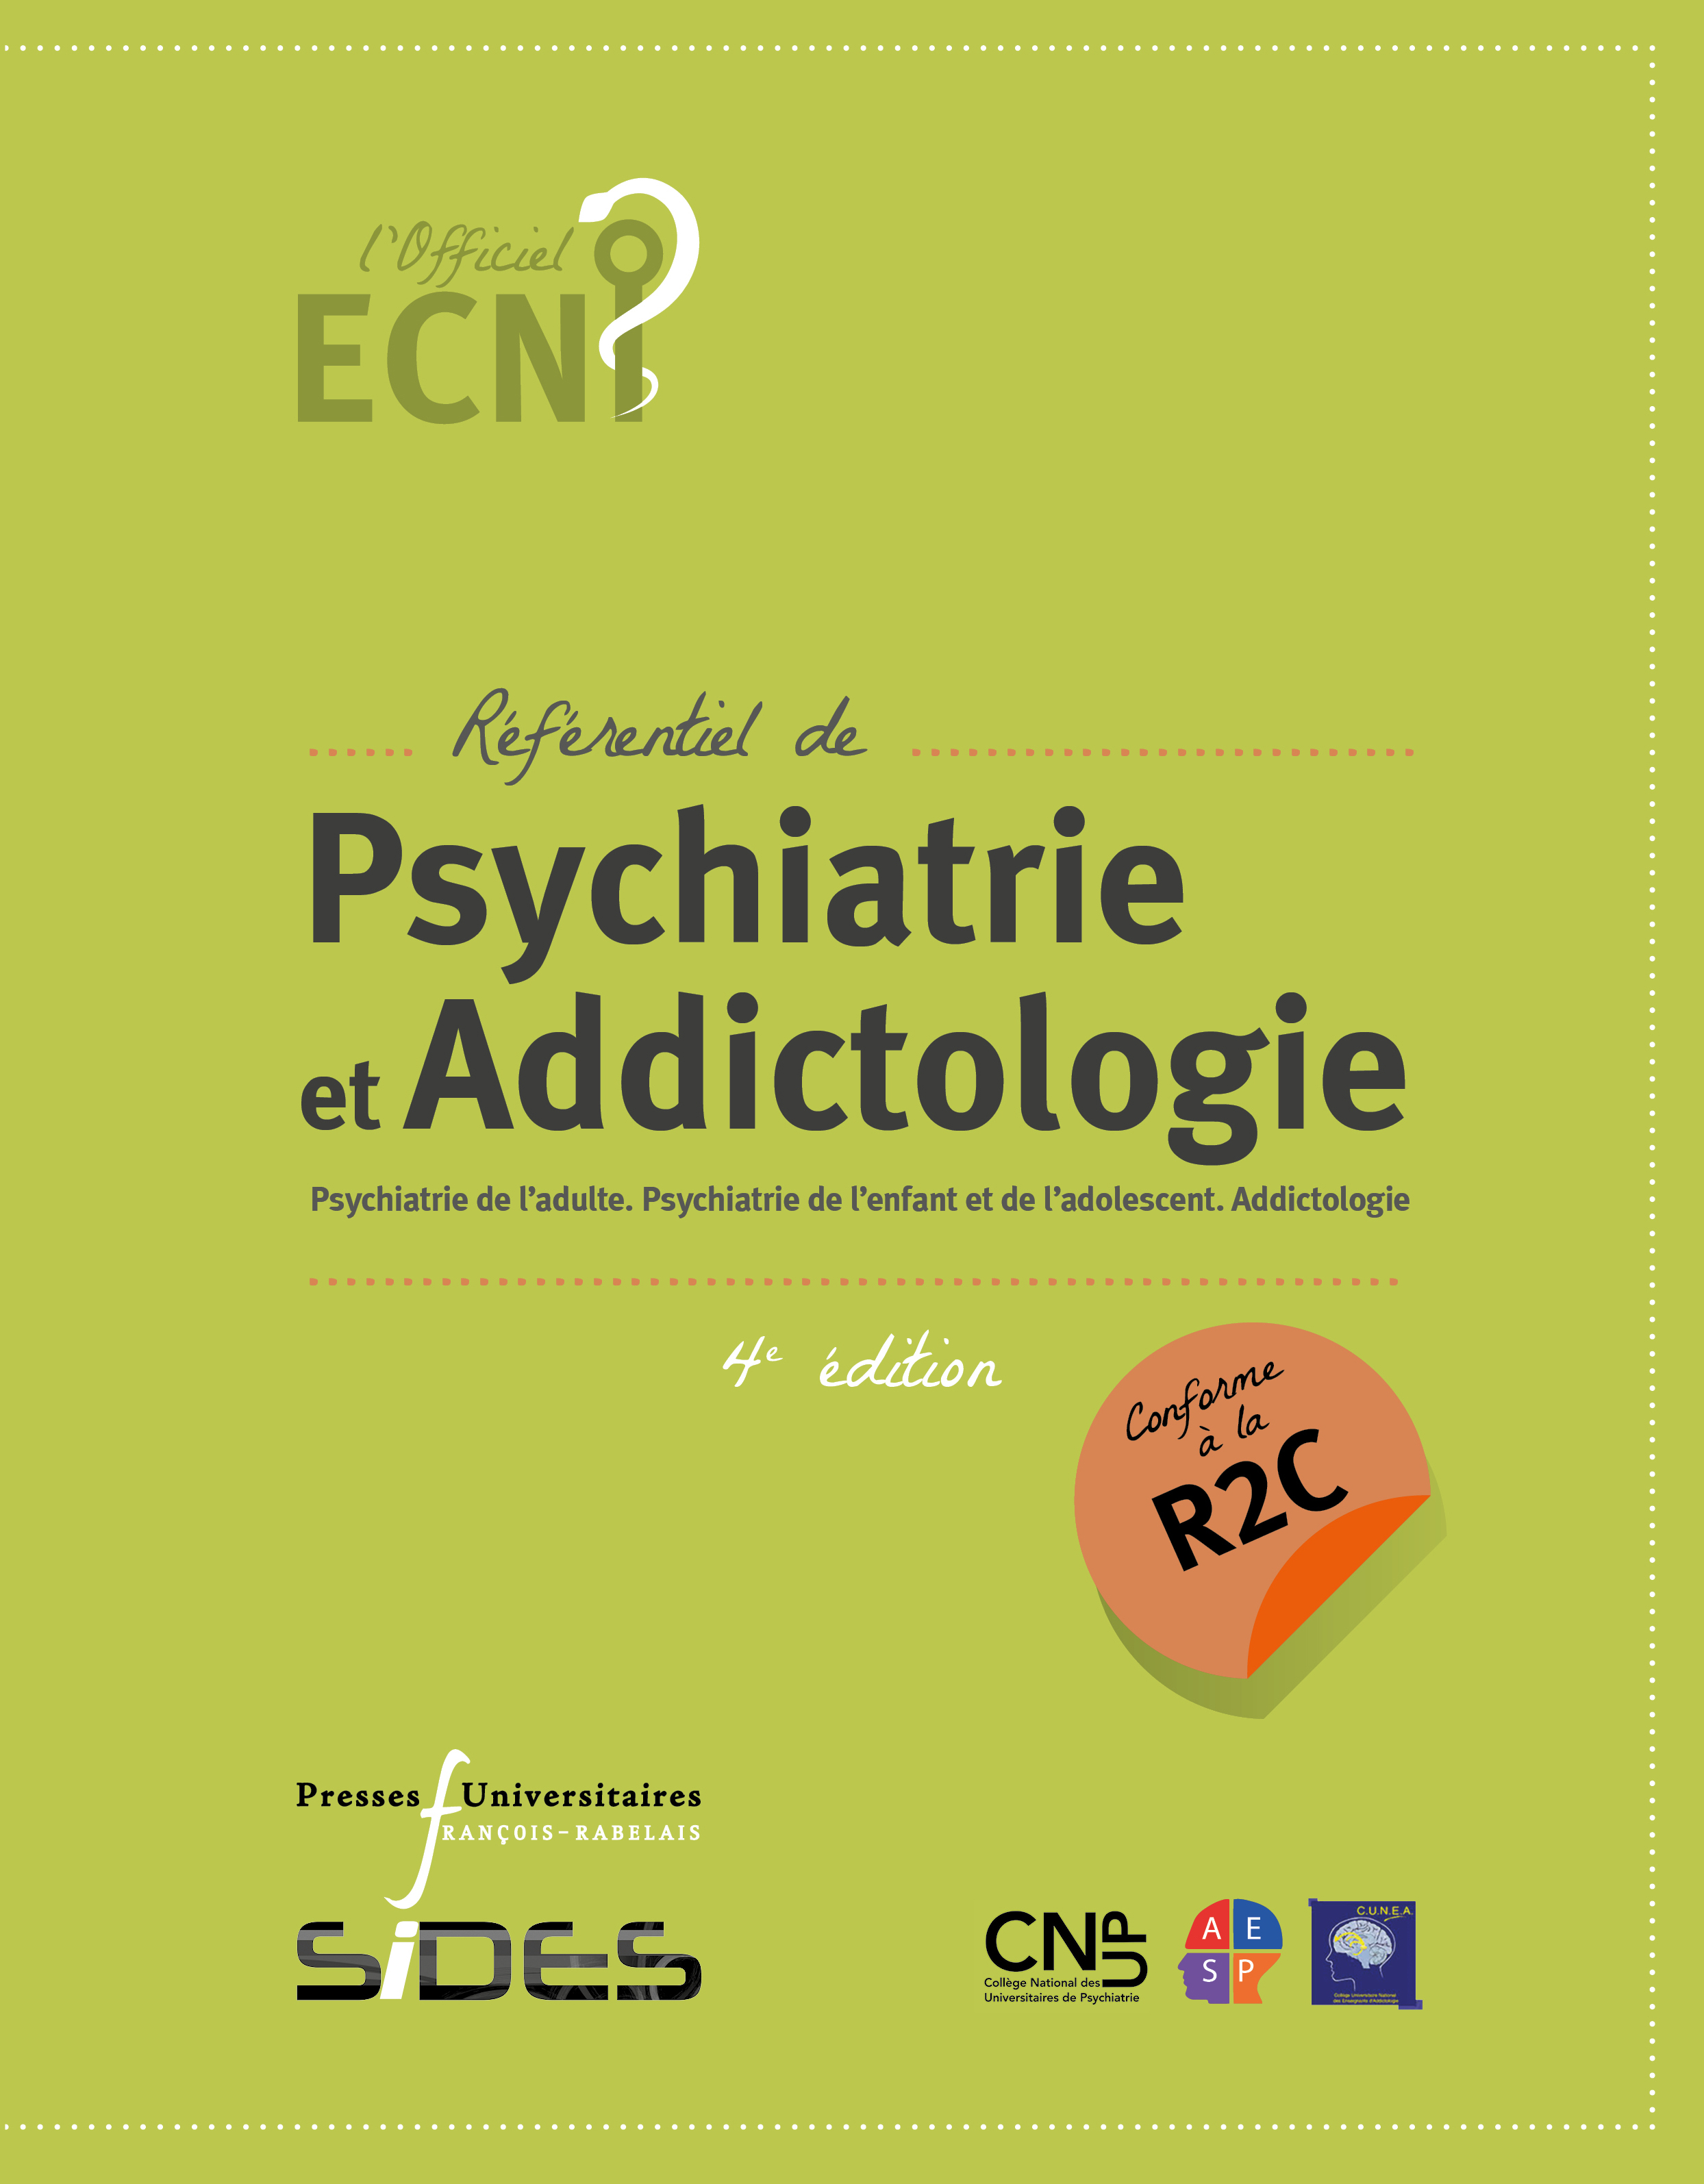 ECN référentiel de Psychiatrie et addictologie (4e édition conforme à la R2C)